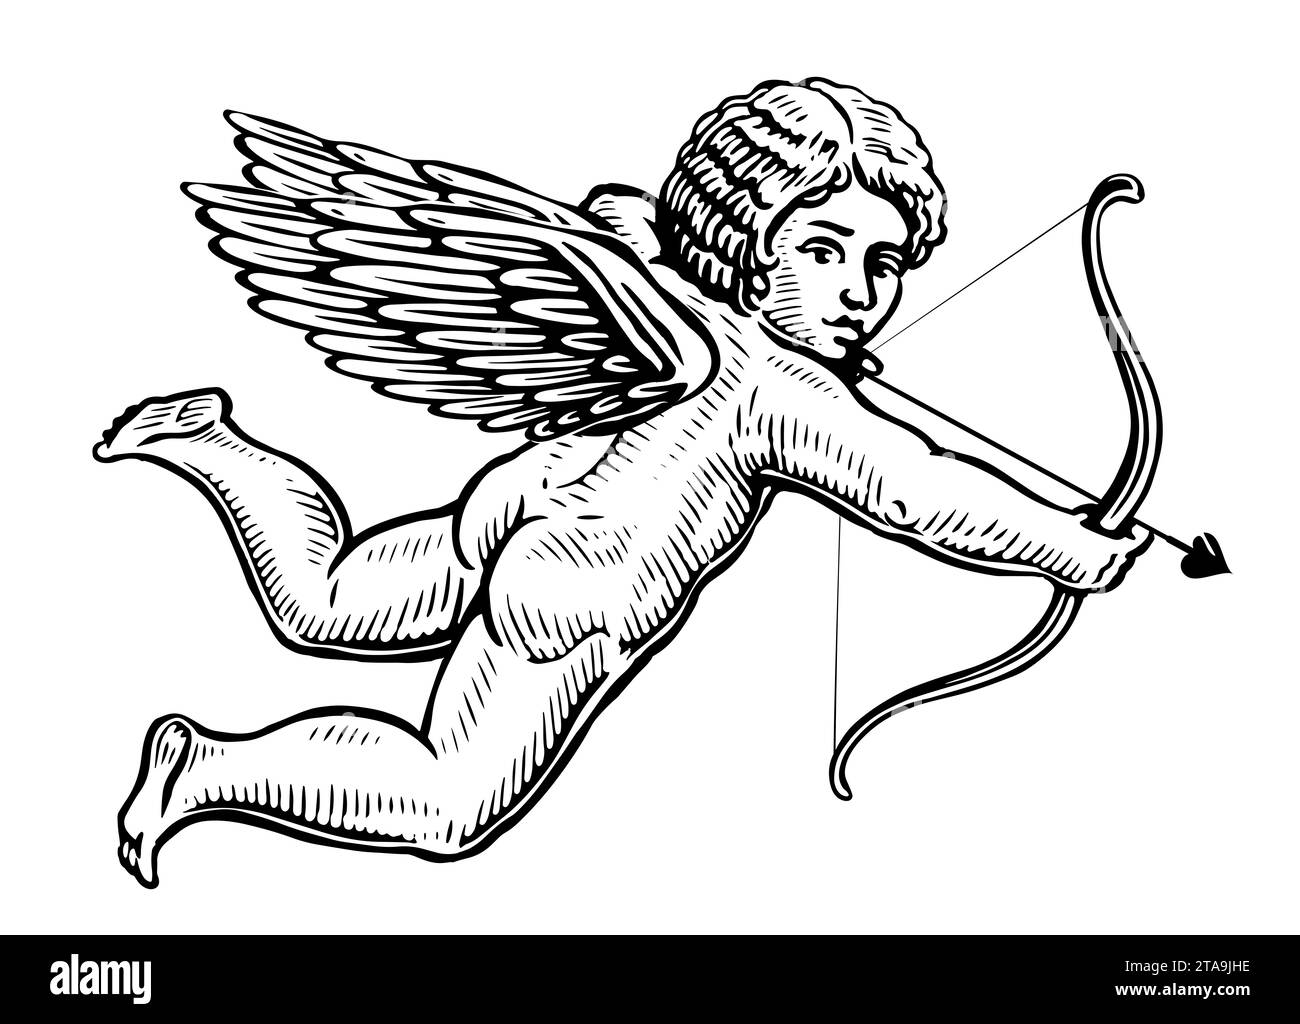 Ange volant tenant un arc et visant ou tirant une flèche, dessiné à la main. Illustration de gravure vintage Banque D'Images